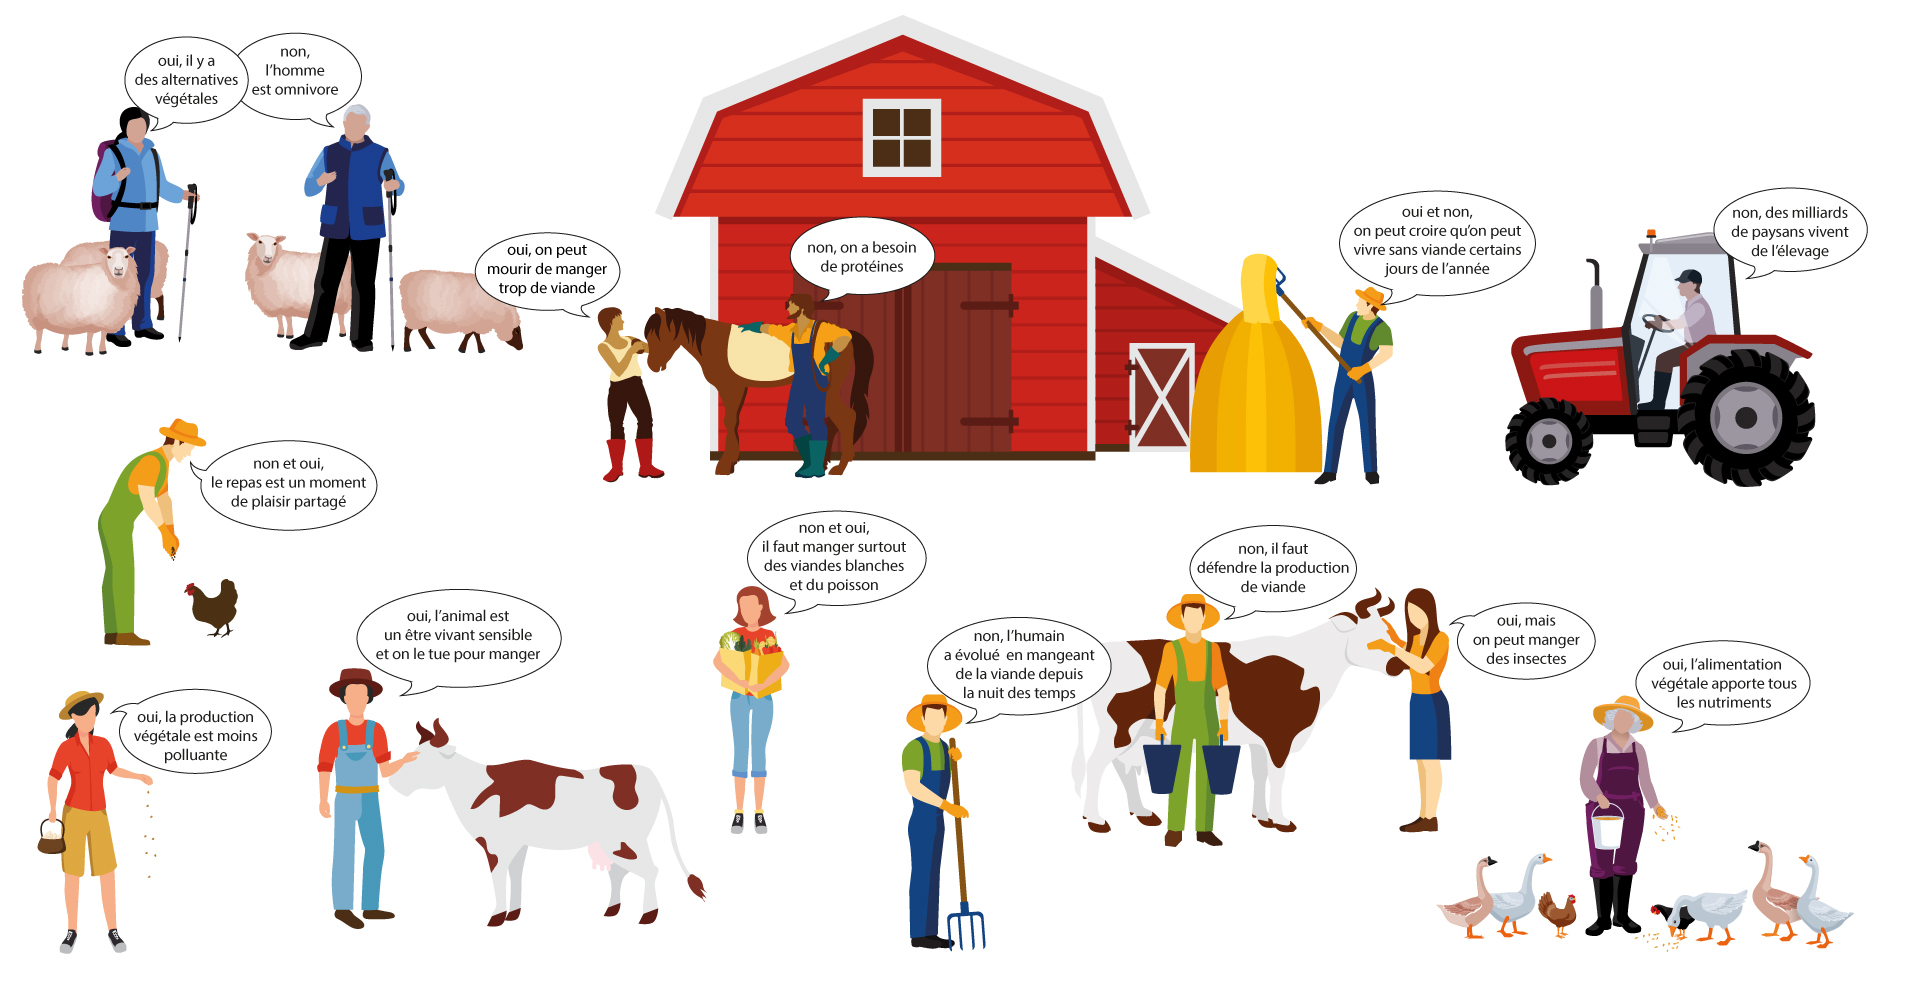 Peut-on vivre sans viande ?, une question de point de vue, continuons à en discuter pour améliorer les pratiques d’élevage et de la filière ?